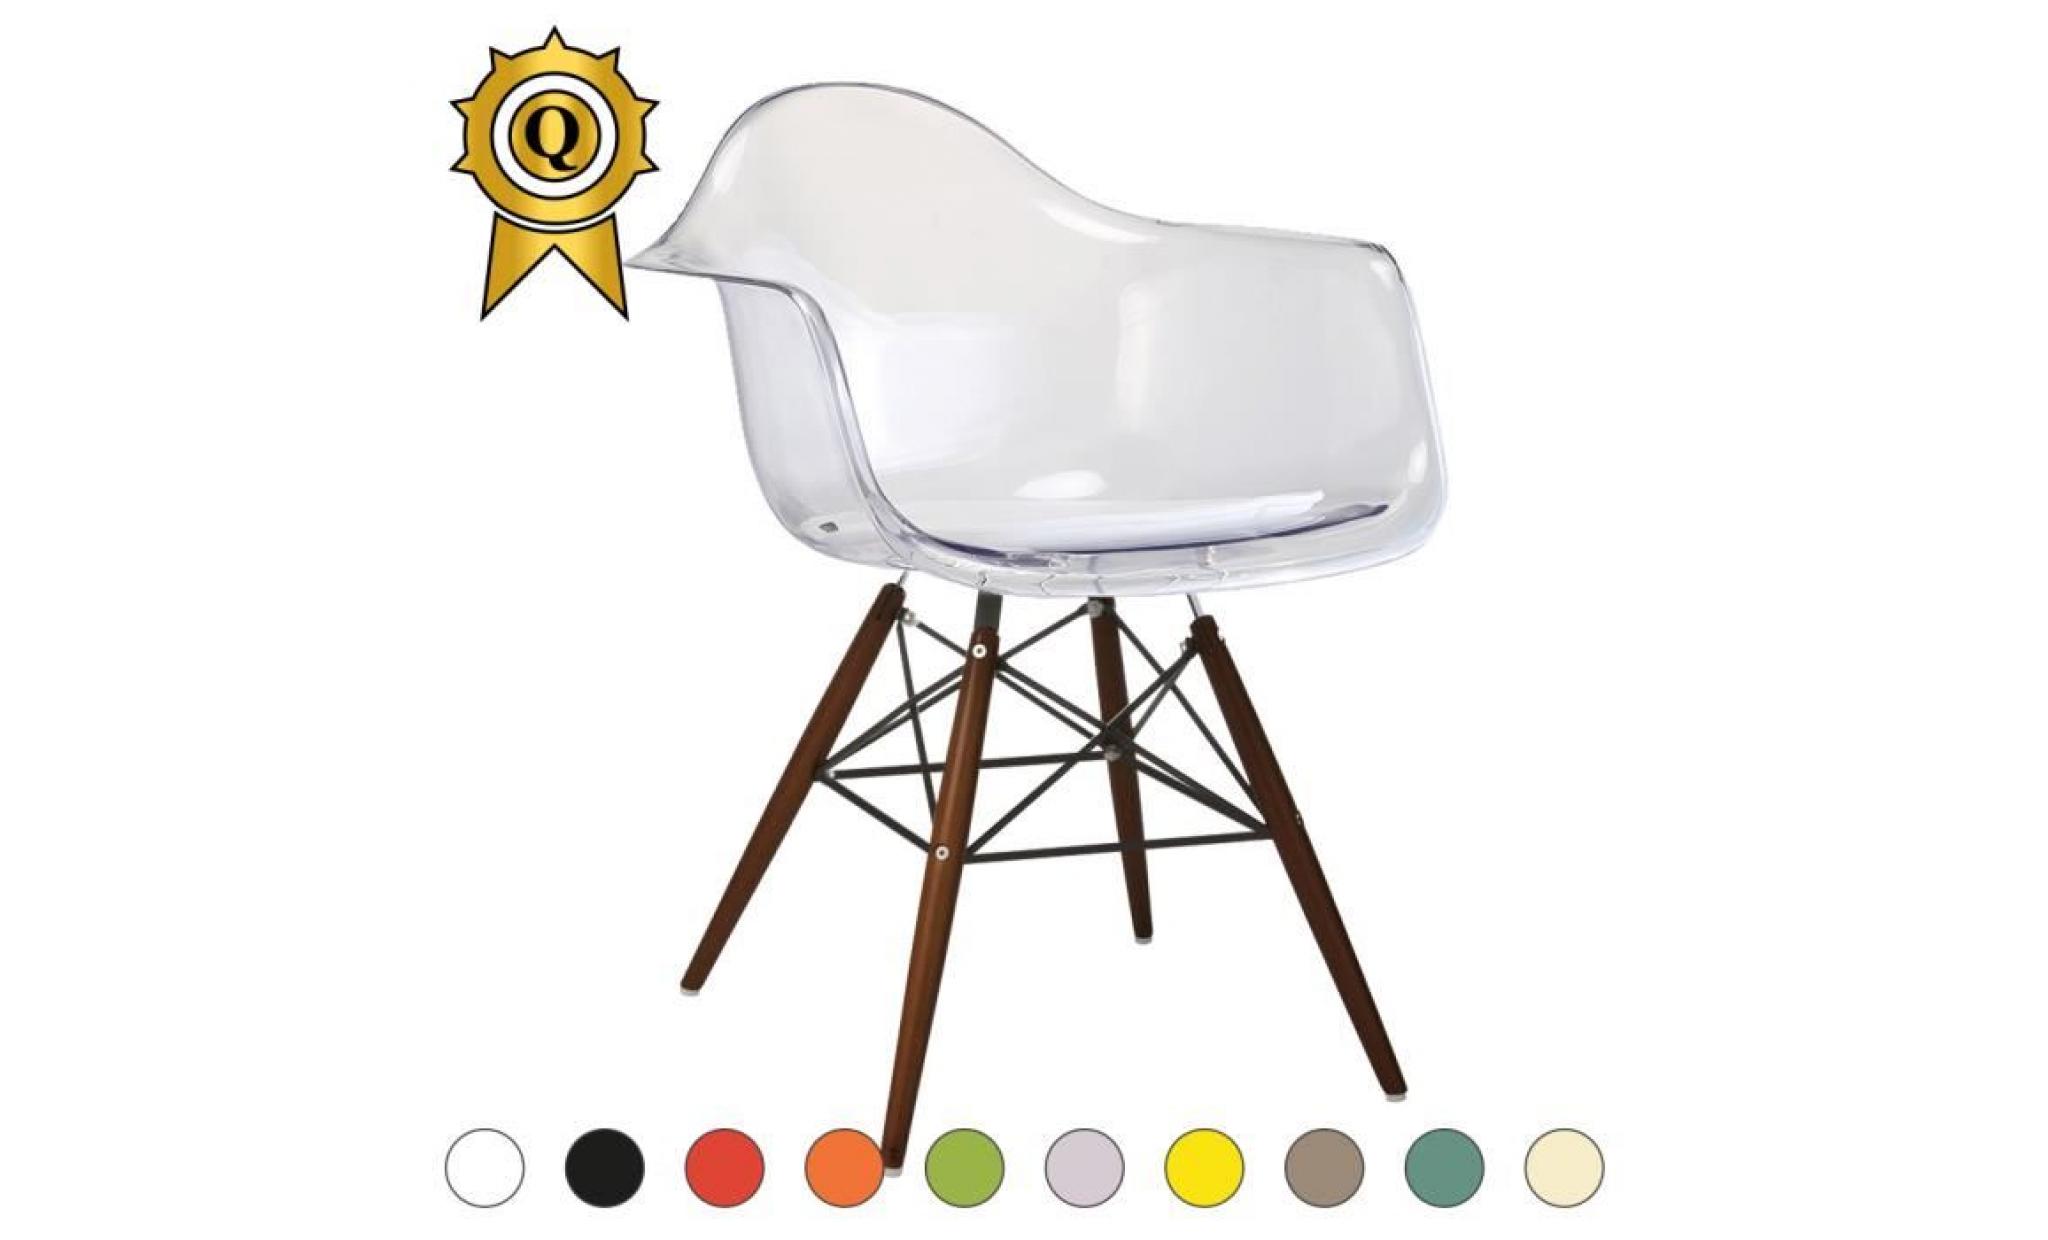 1 x fauteuil design retro style charles eames daw hauteur 48cm pieds en bois noir assise vert flash mobistyl®